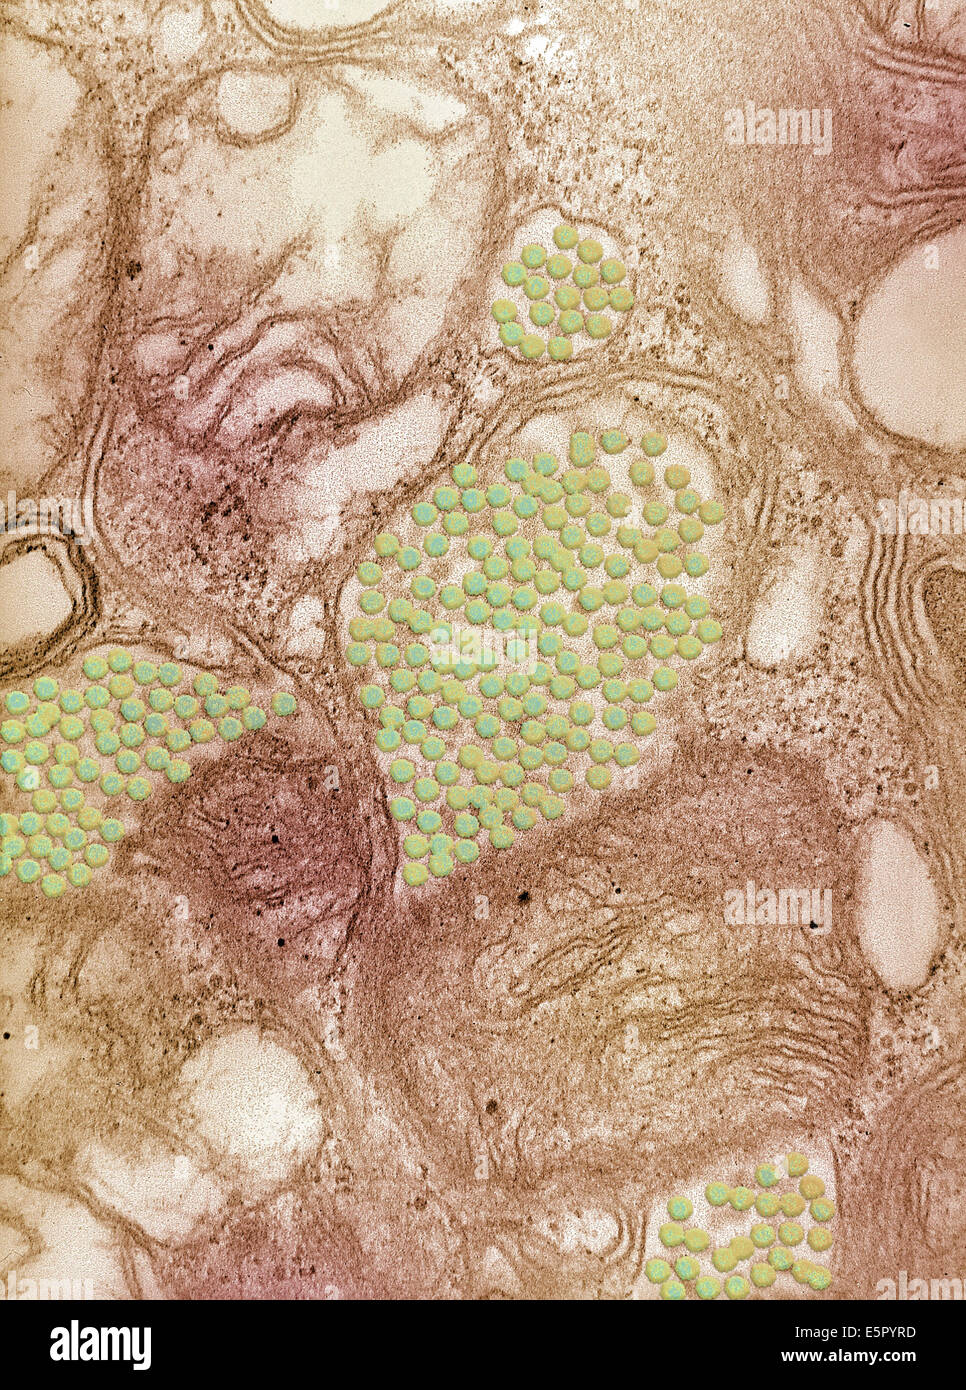 Eingefärbte Transmission Electron Schliffbild (TEM) östliche pferdeartige Gehirnentzündung (EEE) Viren aus einer Speicheldrüse von einer Stockfoto